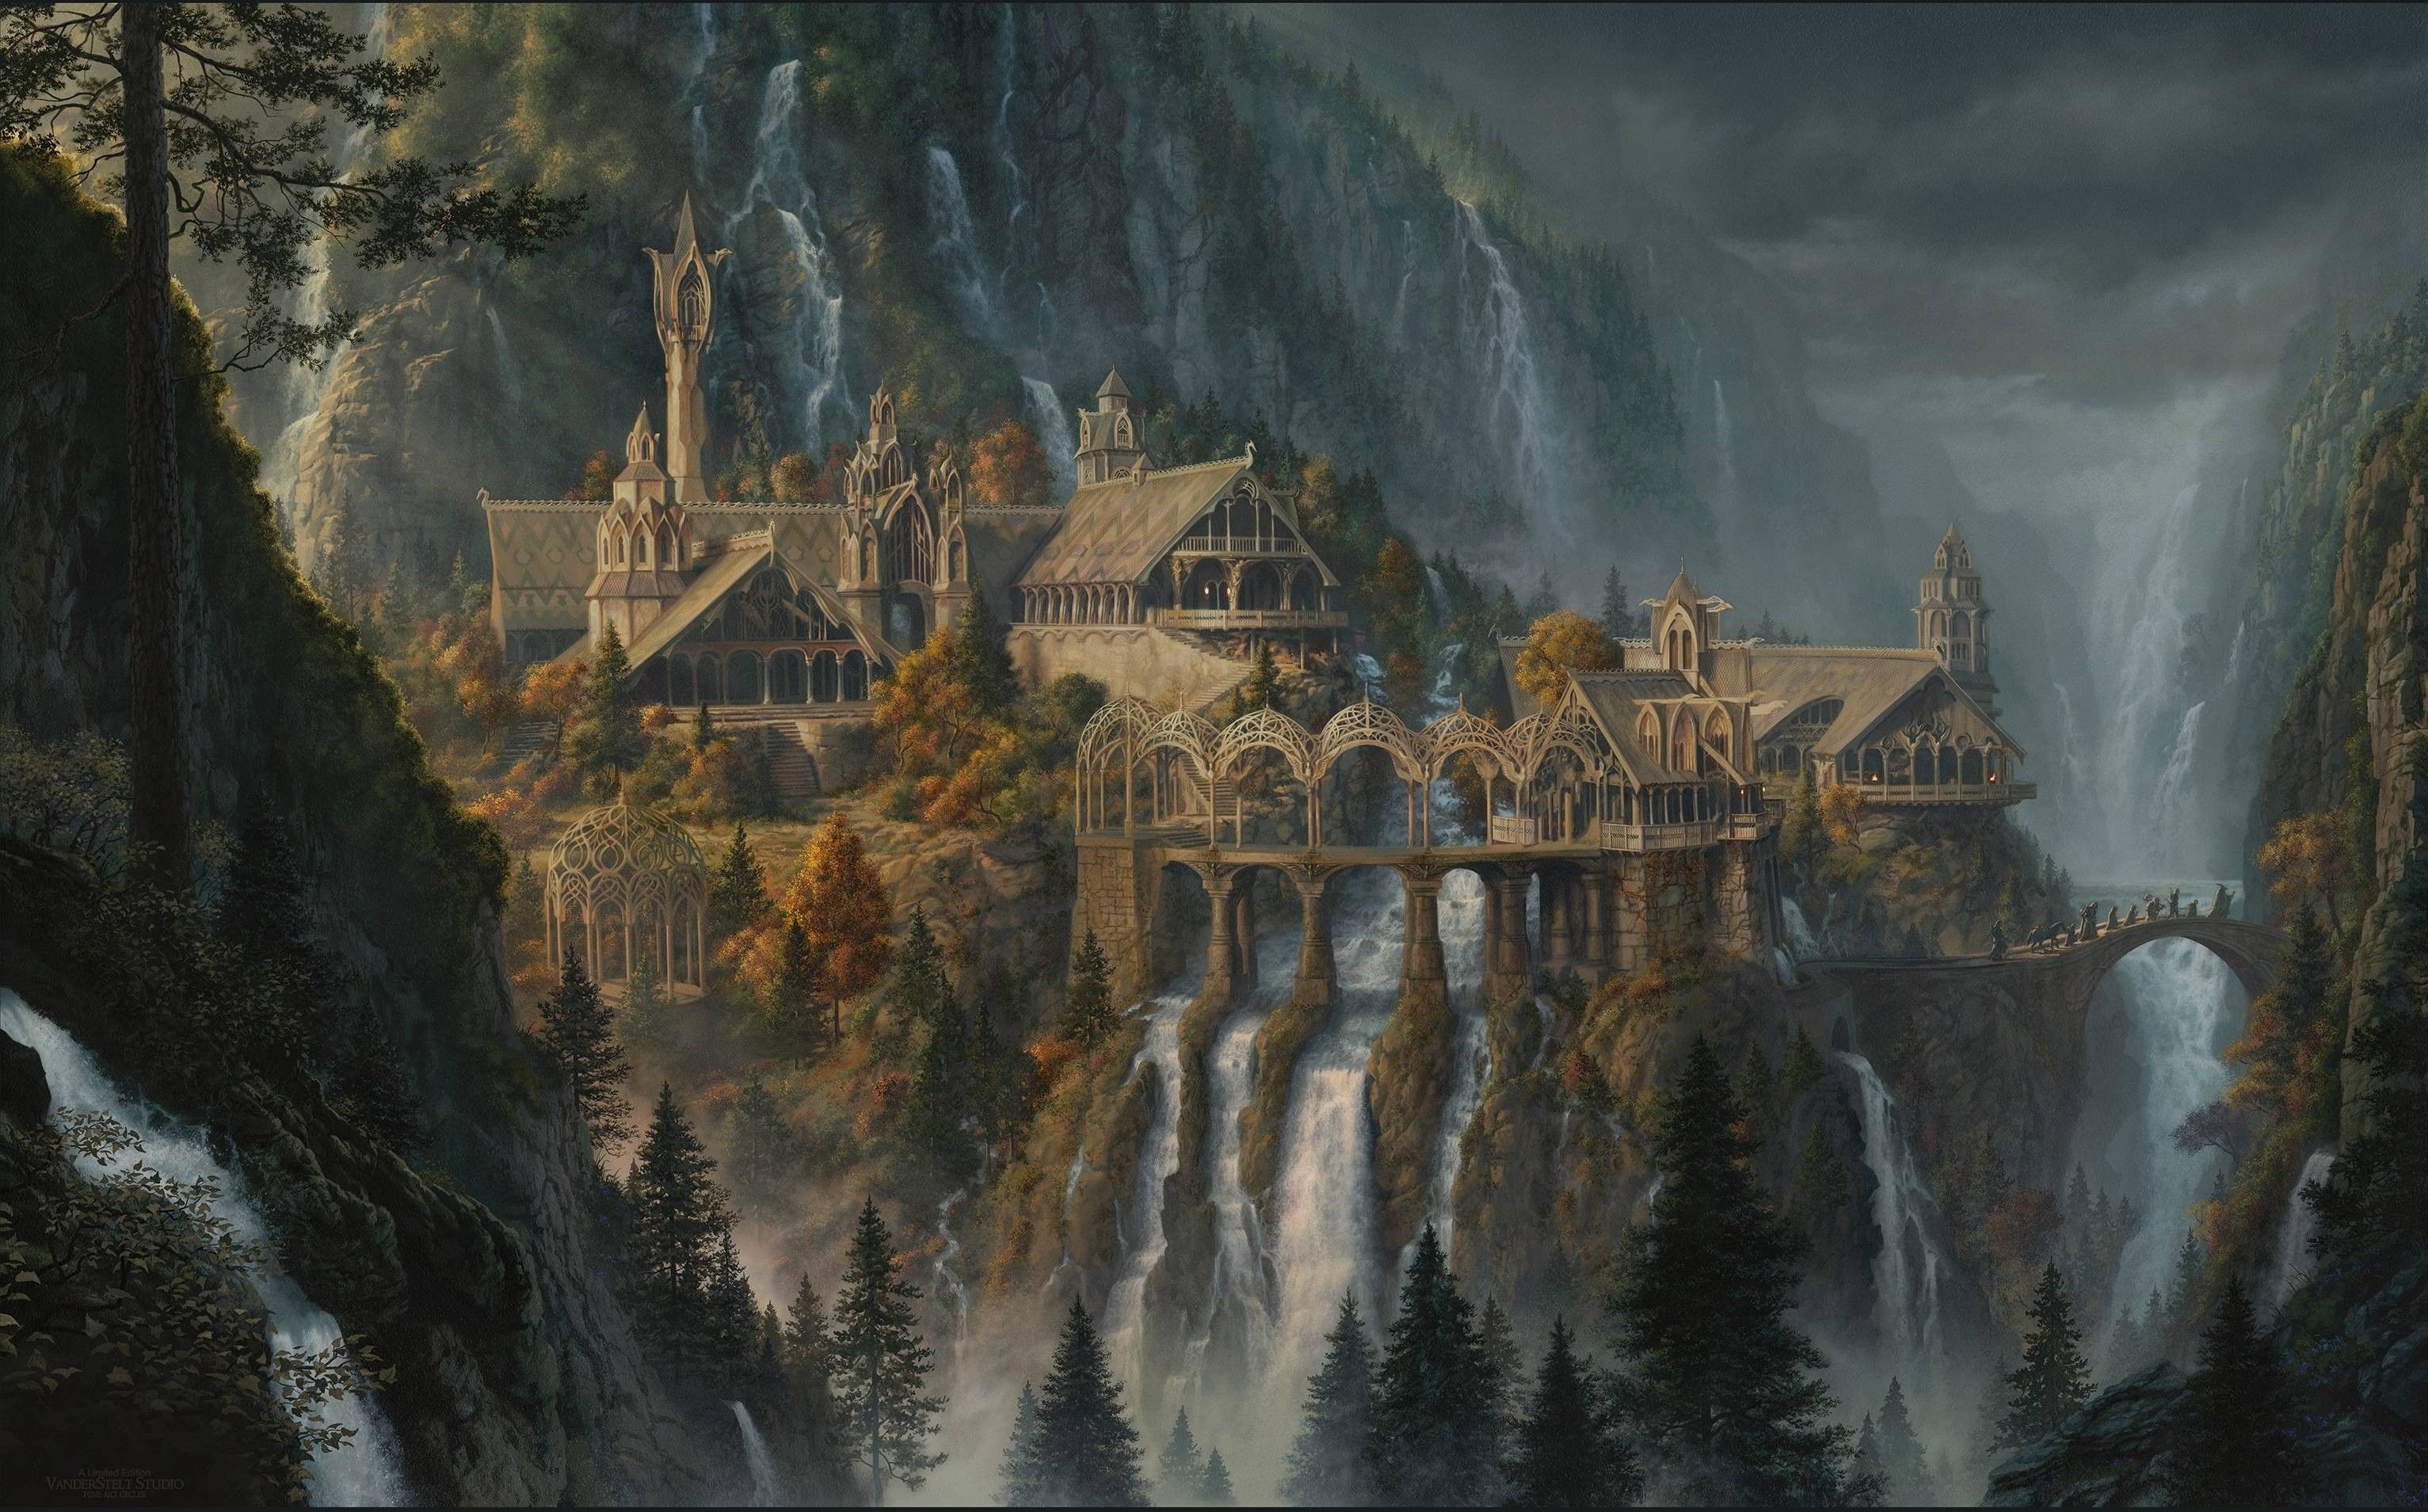 WallpaperDog là nơi tuyệt vời để tìm kiếm những hình nền đẹp về Lord of the Rings cho máy tính của bạn. Với một bộ sưu tập ảnh đa dạng, từ những cảnh vật lãng mạn đến những tạo hình khó tin, bạn sẽ tìm thấy mọi thứ mình cần. Hãy truy cập ngay để tải về hình nền ưa thích của bạn.